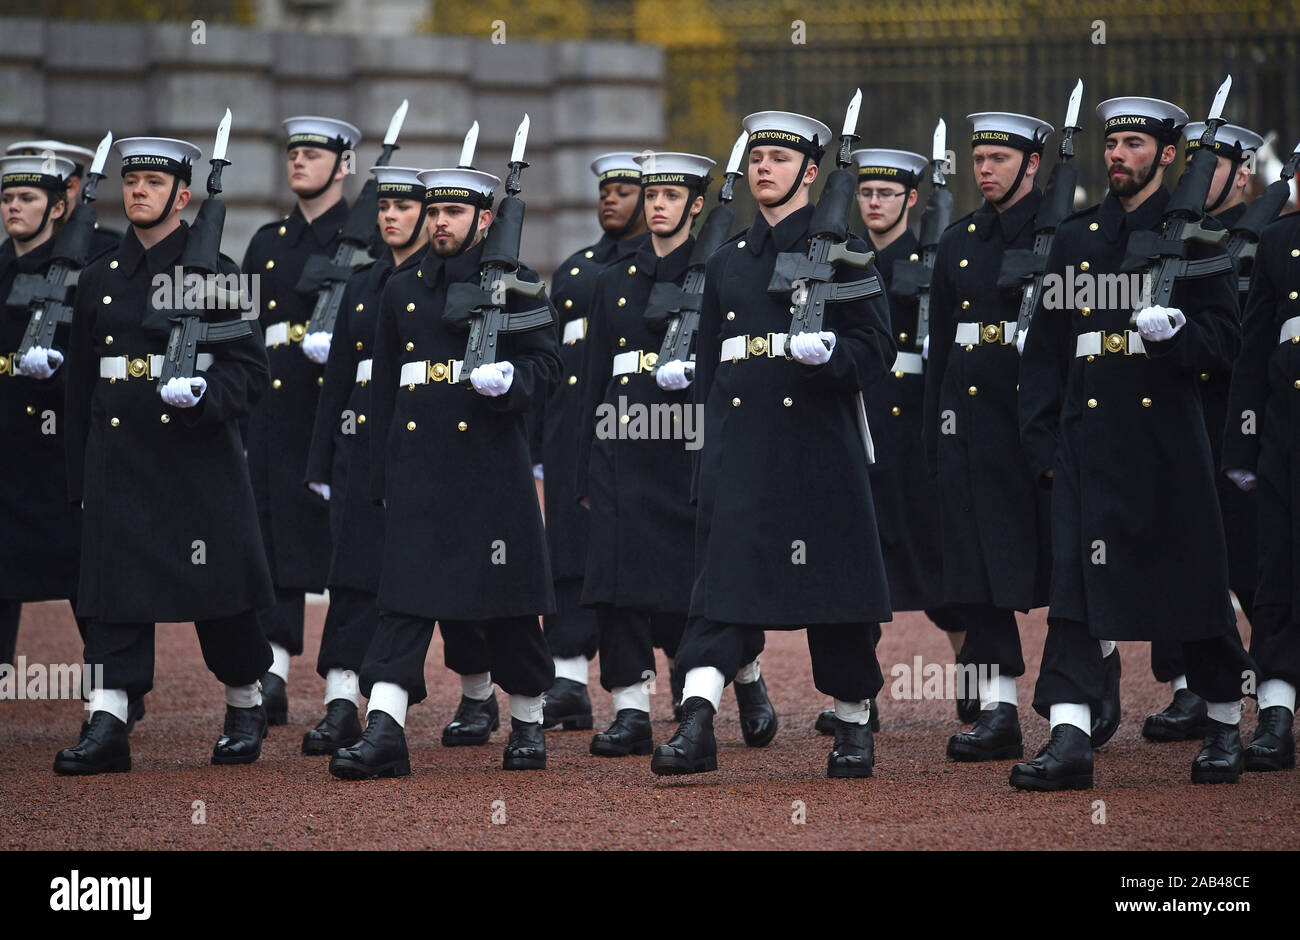 Les marins de la Royal Navy effectuer la cérémonie de Relève de la garde à Buckingham Palace, Londres, pour la deuxième fois de son 357 ans d'histoire. Banque D'Images